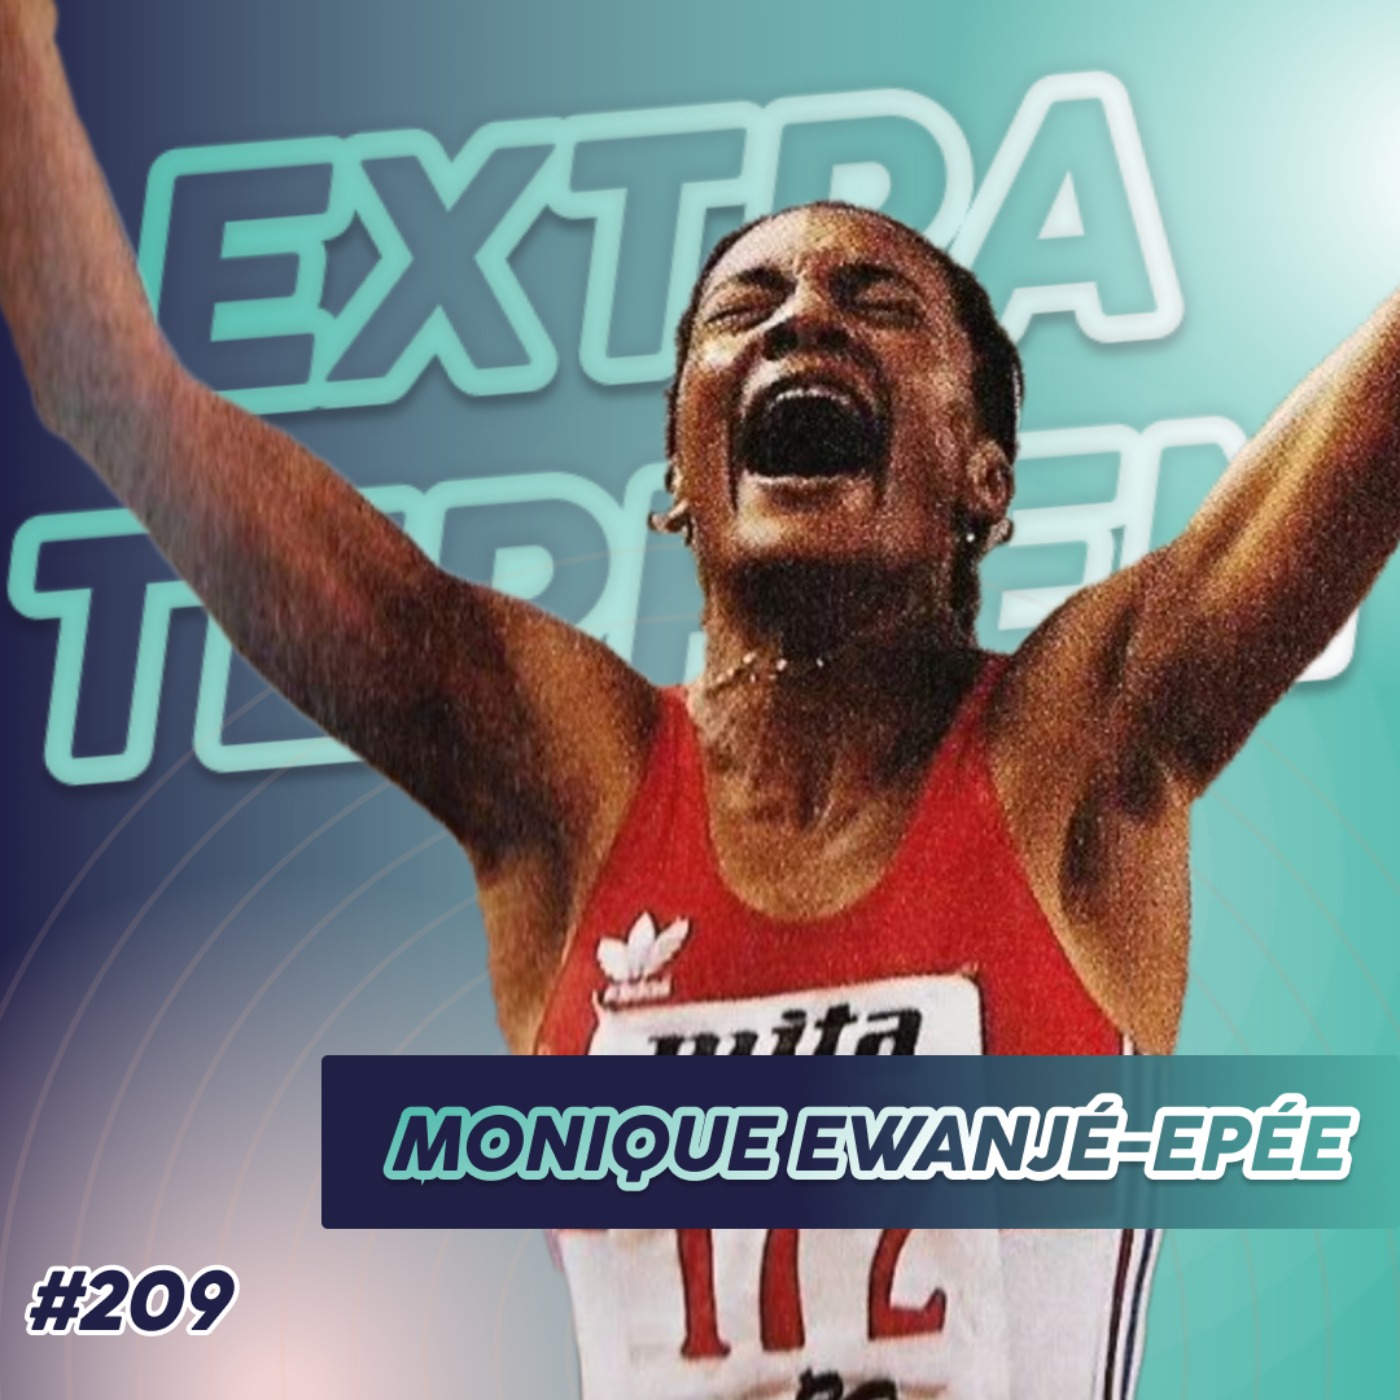 Monique Ewanjé-epée - Elle bat le record francais du 100m haies … le jour de ma naissance